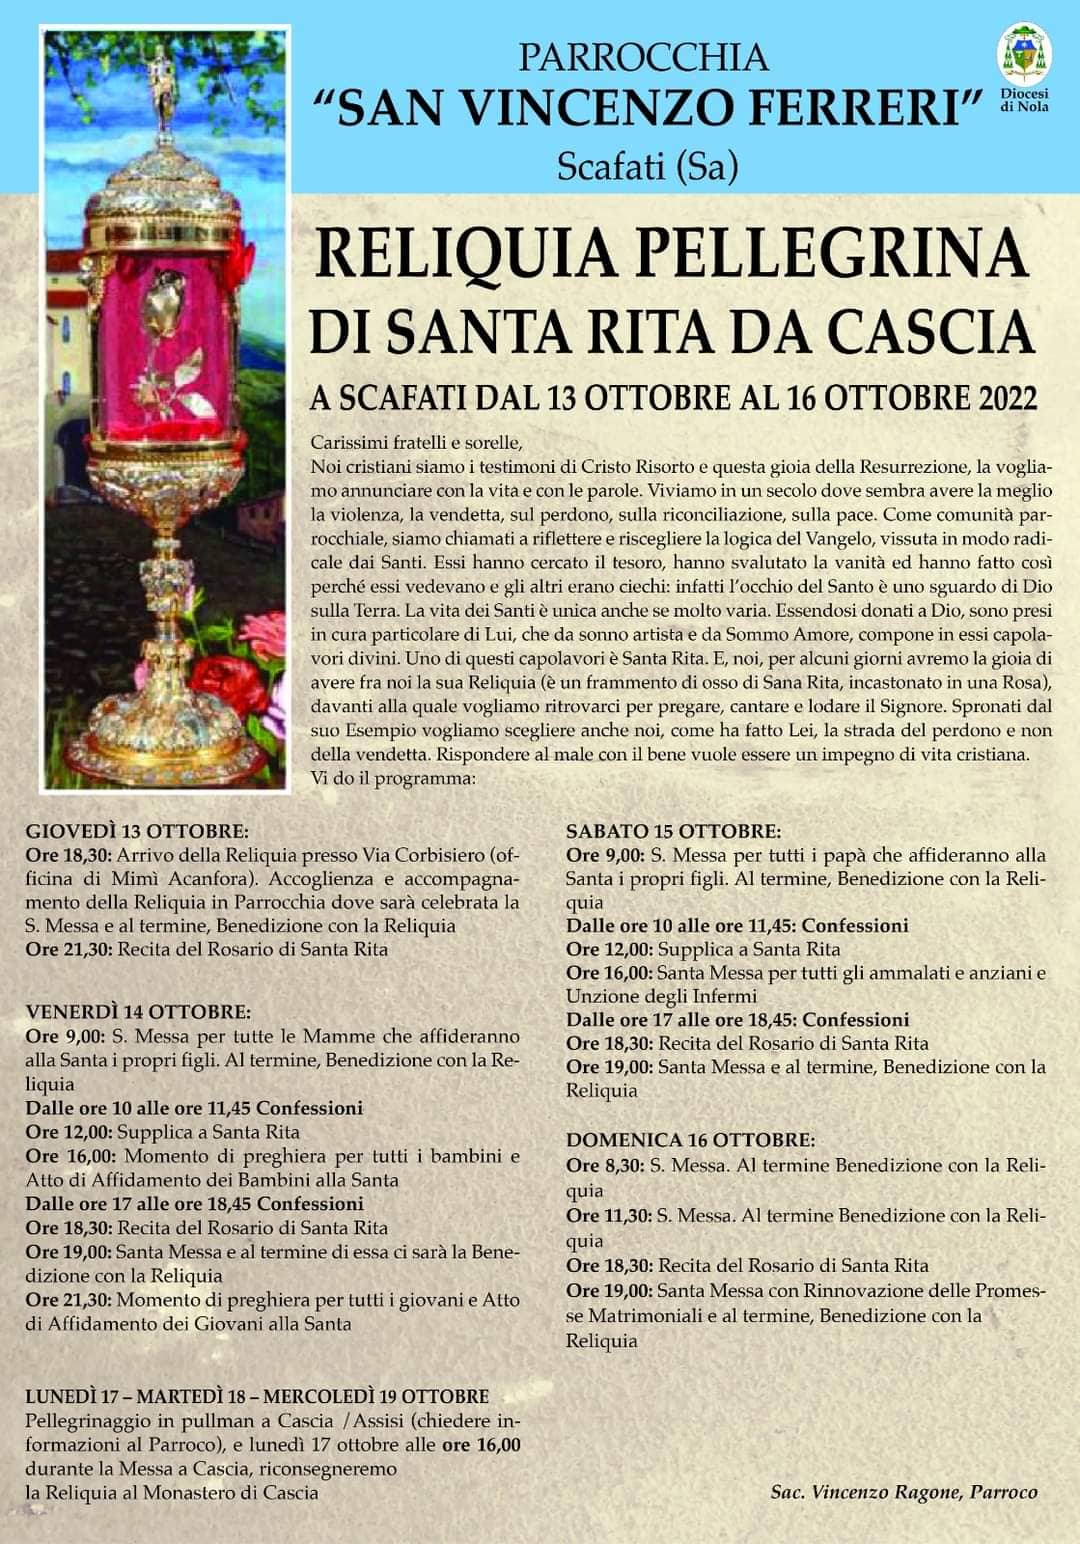 SCAFATI. Nella Parrocchia di San Vincenzo Ferrari arriva la reliquia Pellegrina di Santa Rita da Cascia